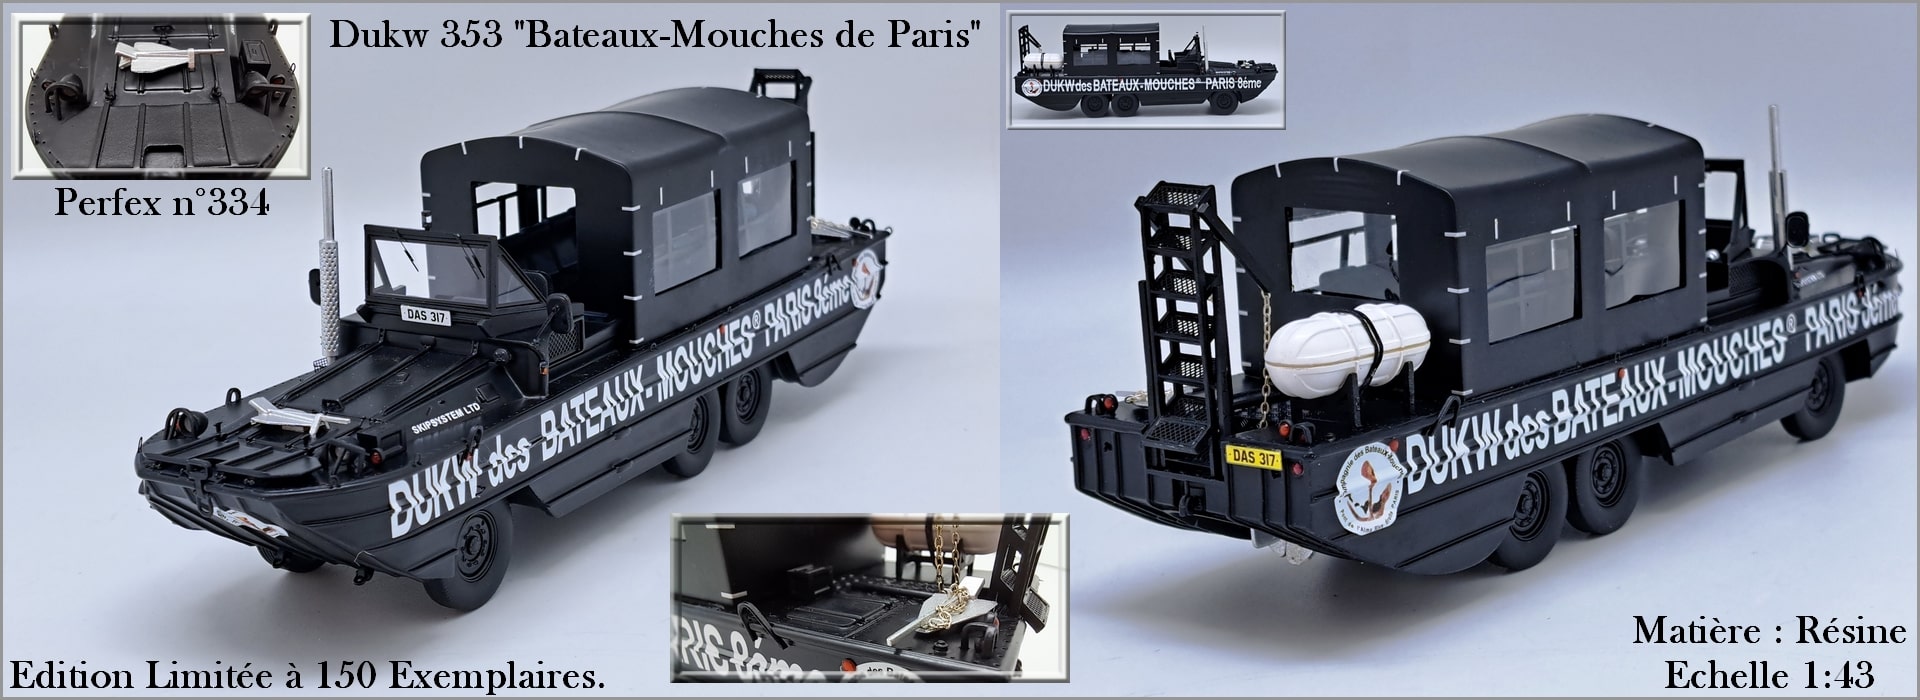 PERFEX334 Coverflow Dukw 353 Bateaux-mouches de Paris